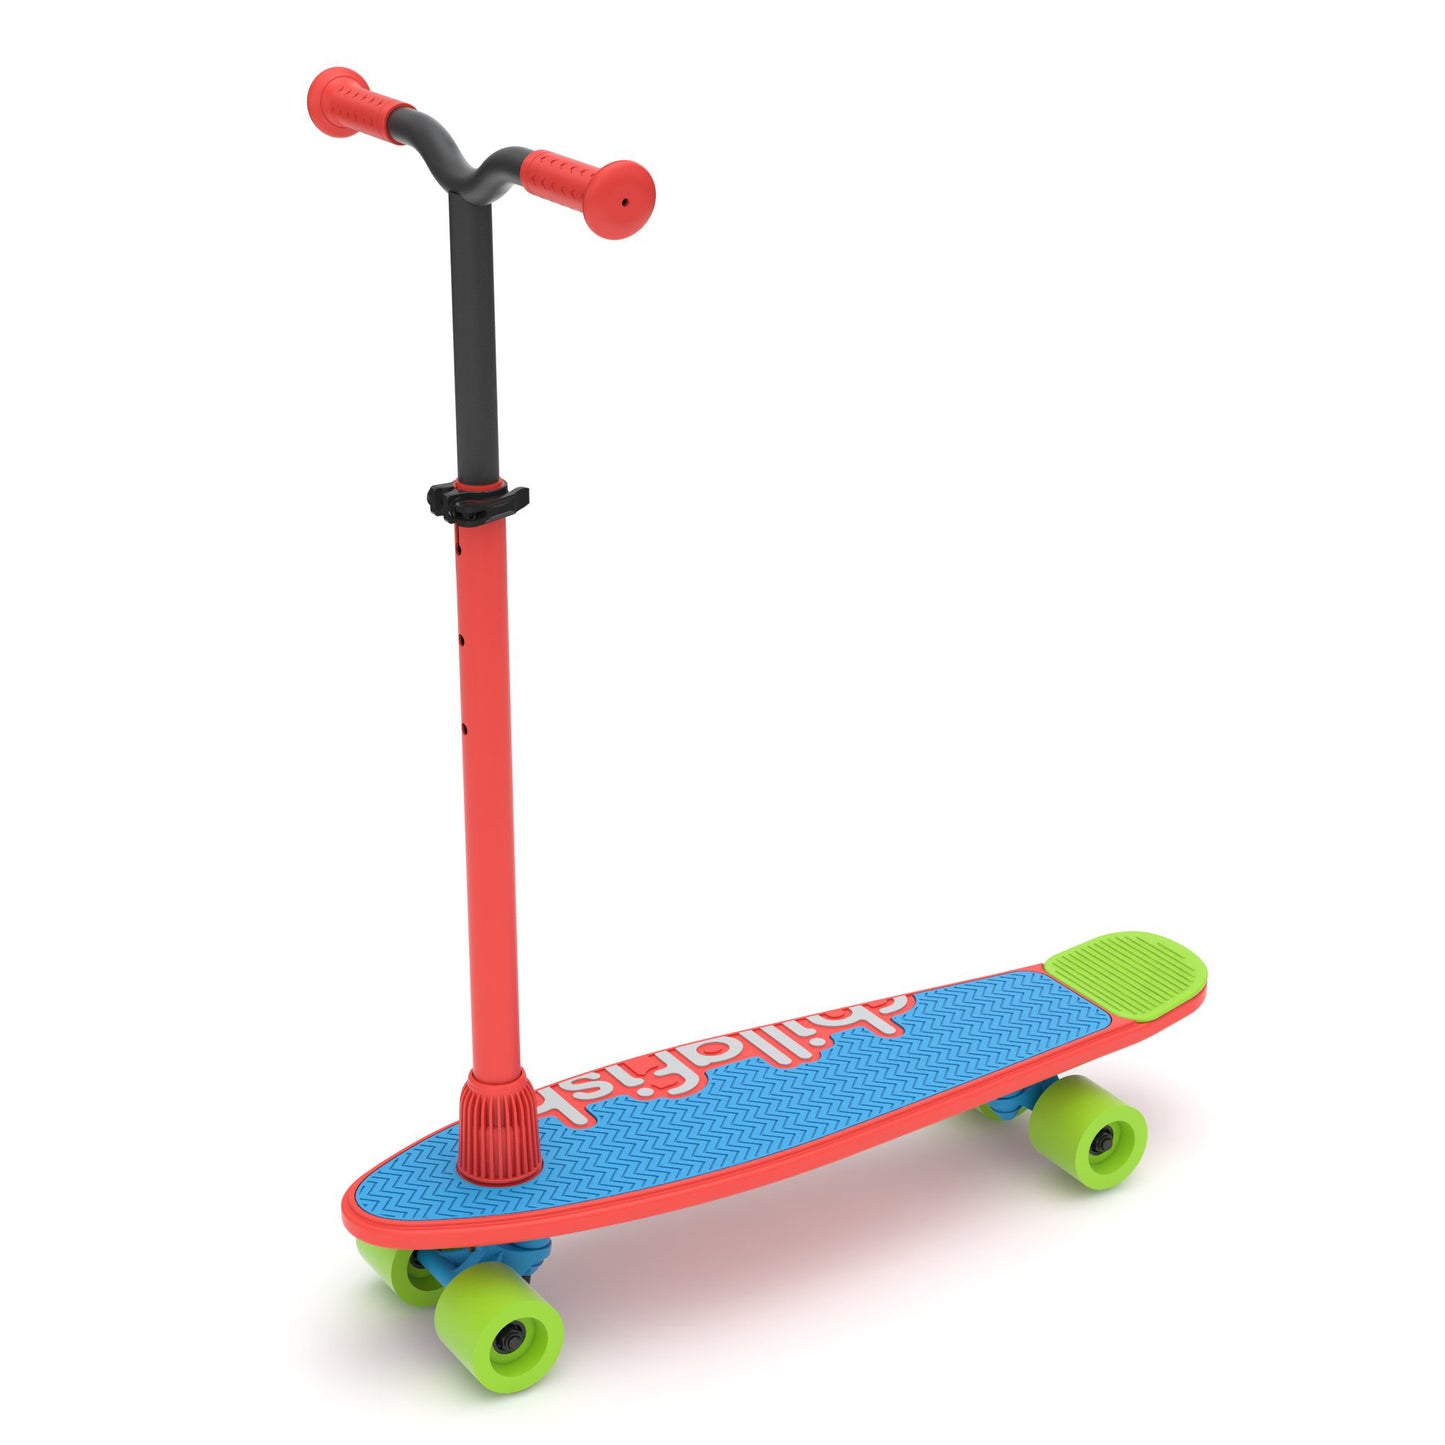 Skatieskootie - skate and scoot in one